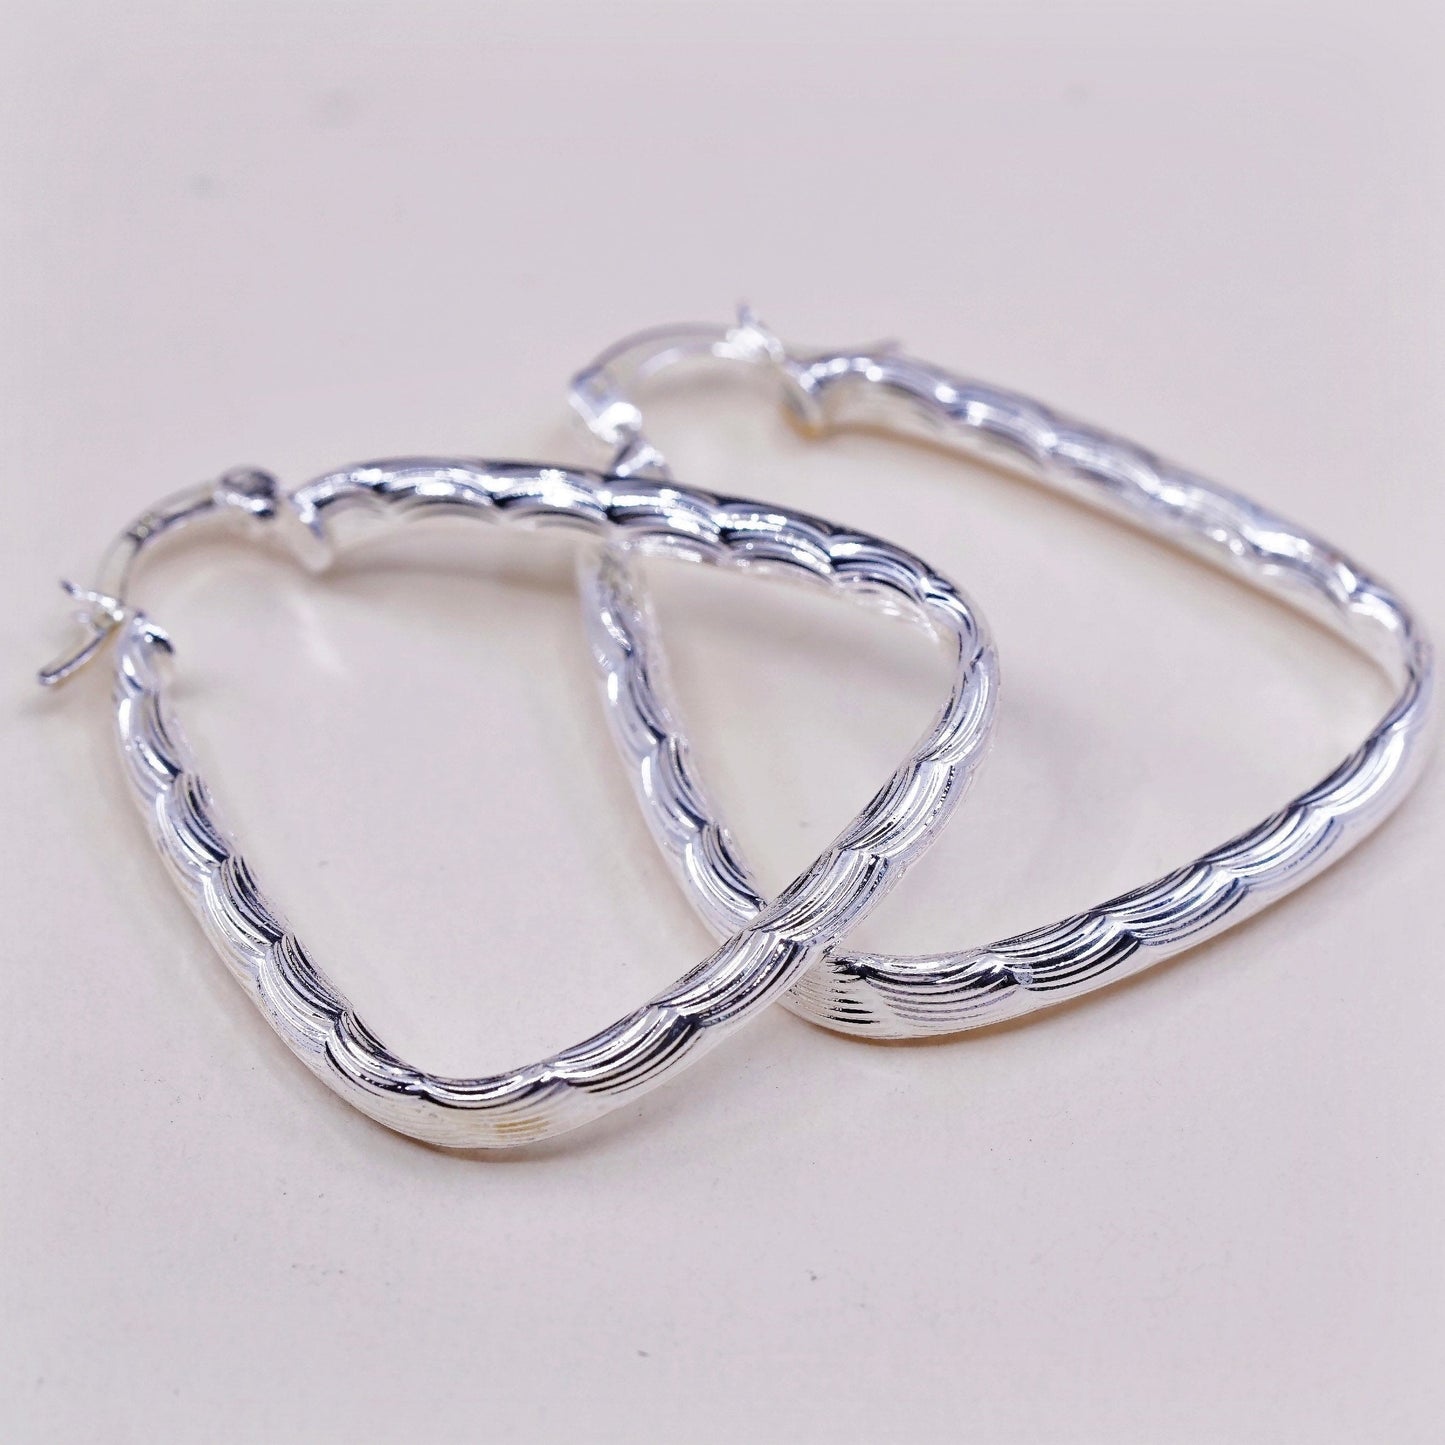 1.5”, VTG sterling silver loop earrings, textured minimalist primitive hoops